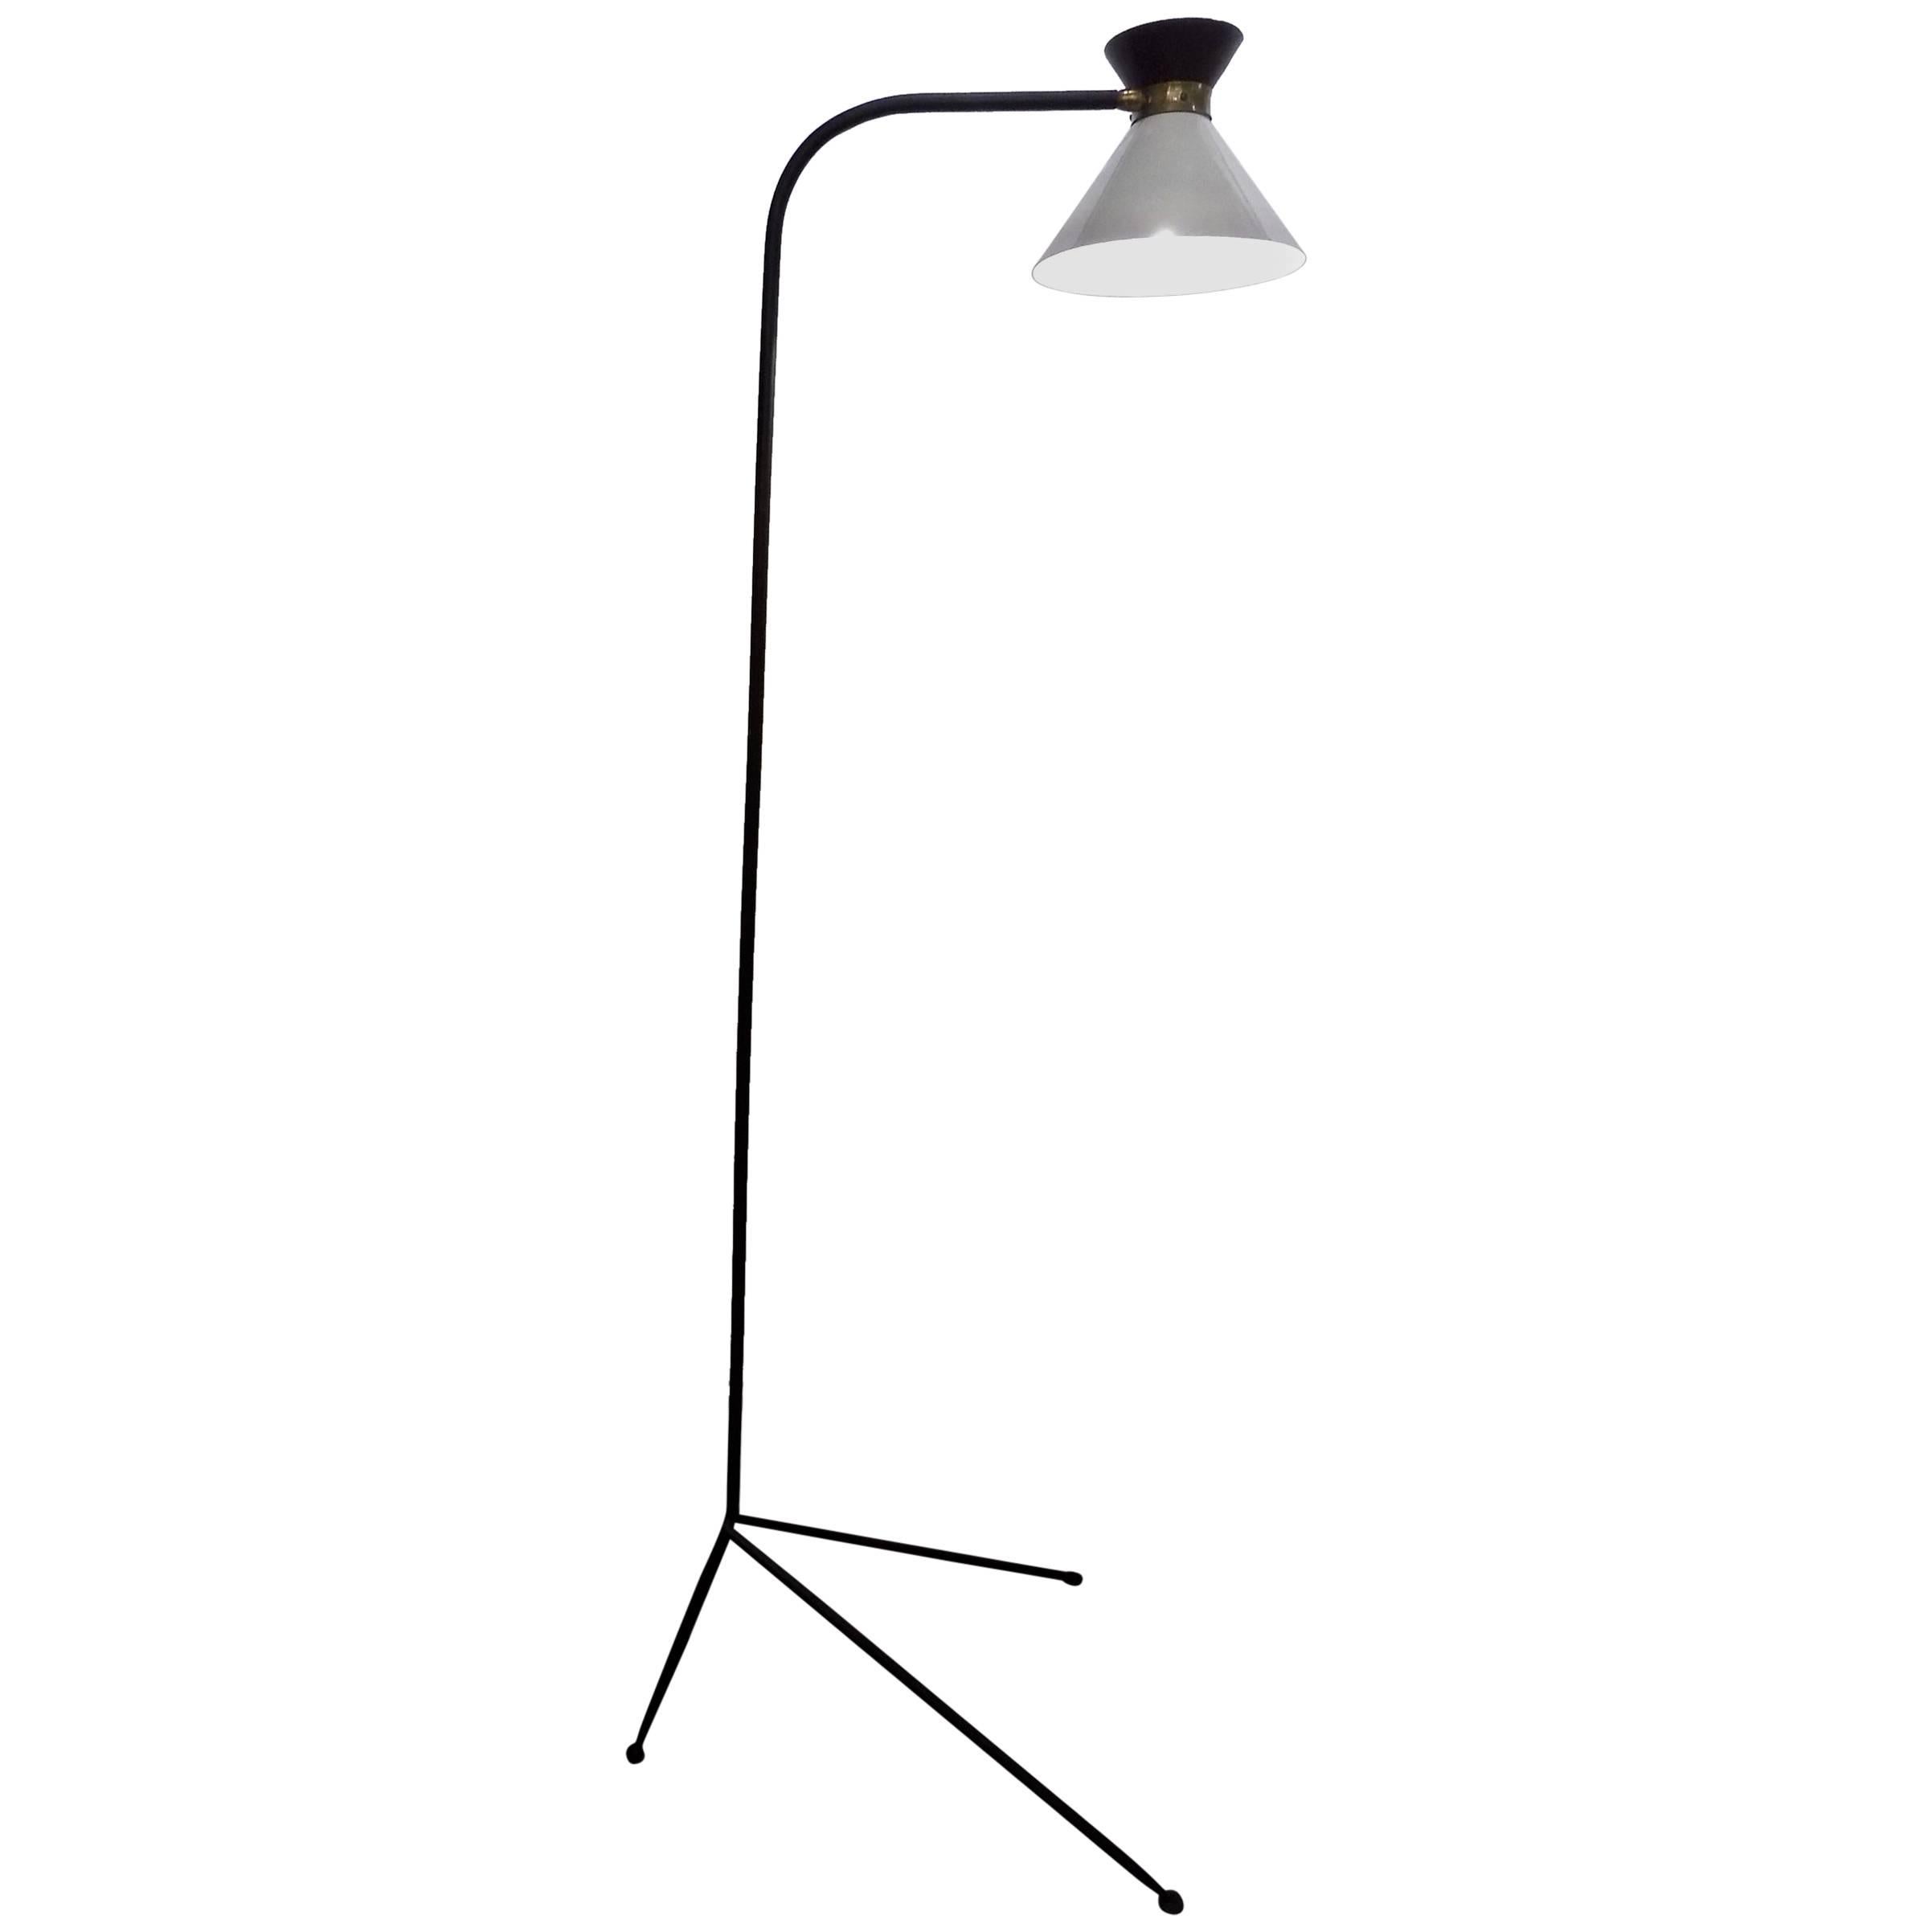 Stilnovo Tripod Floor Lamp by Stilnovo